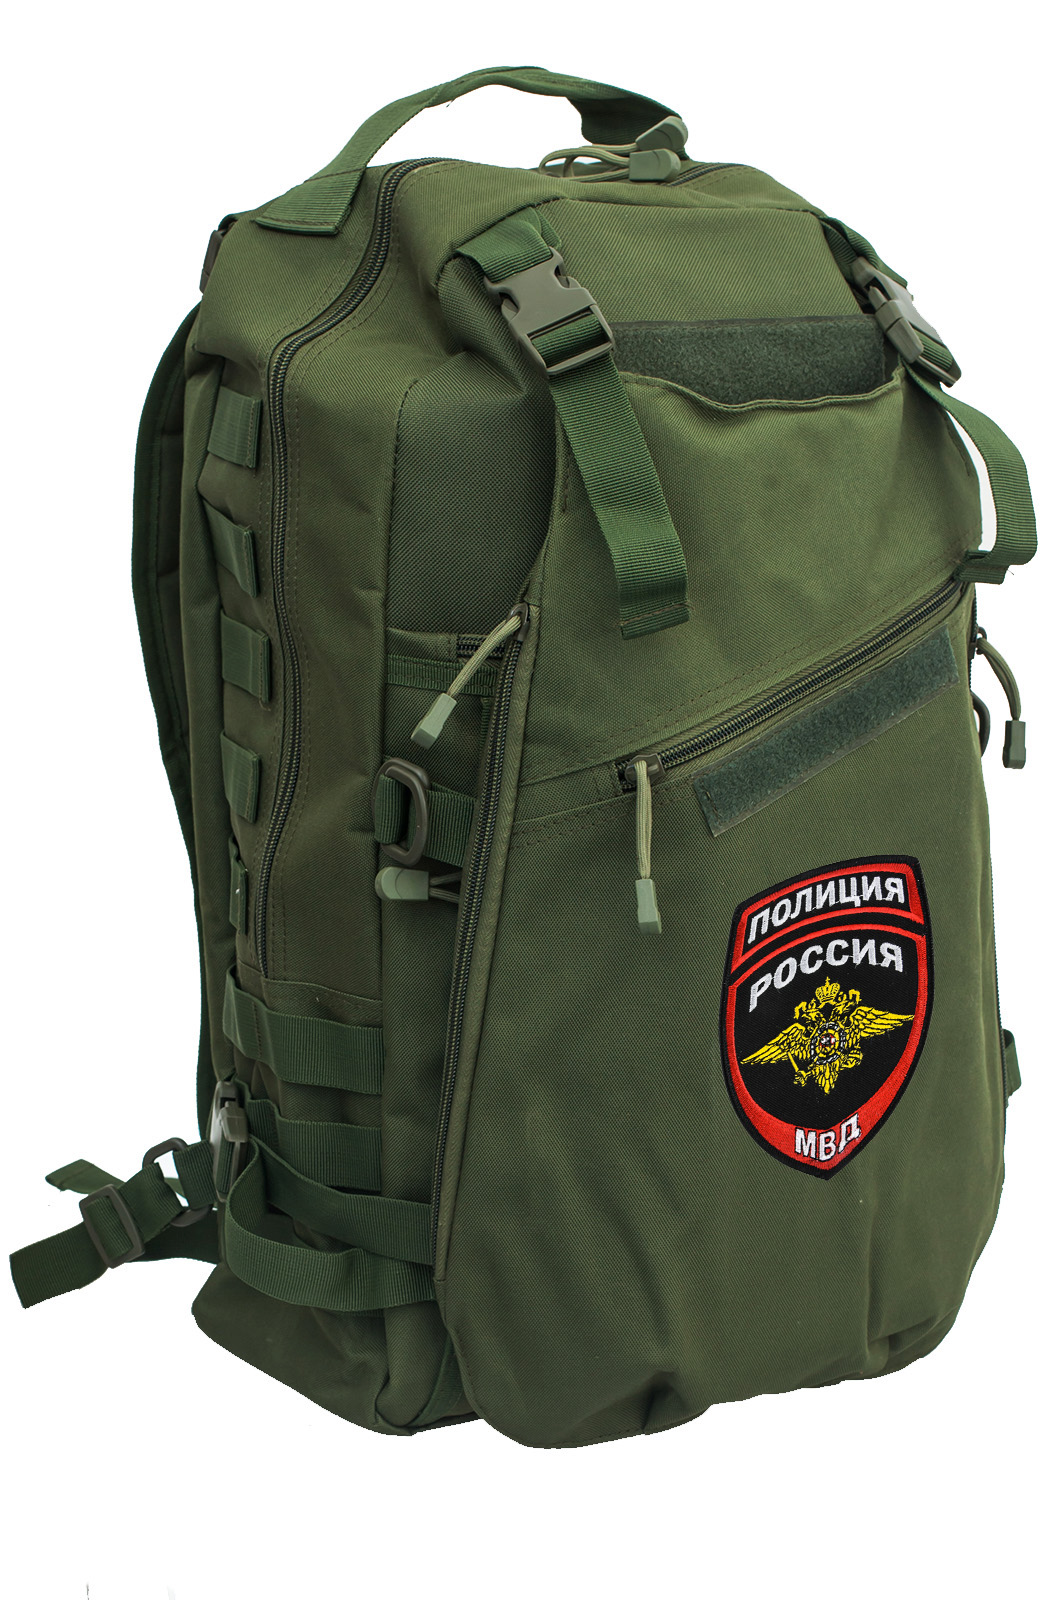 Купить надежный тактический рюкзак с нашивкой Полиция России оптом или в розницу